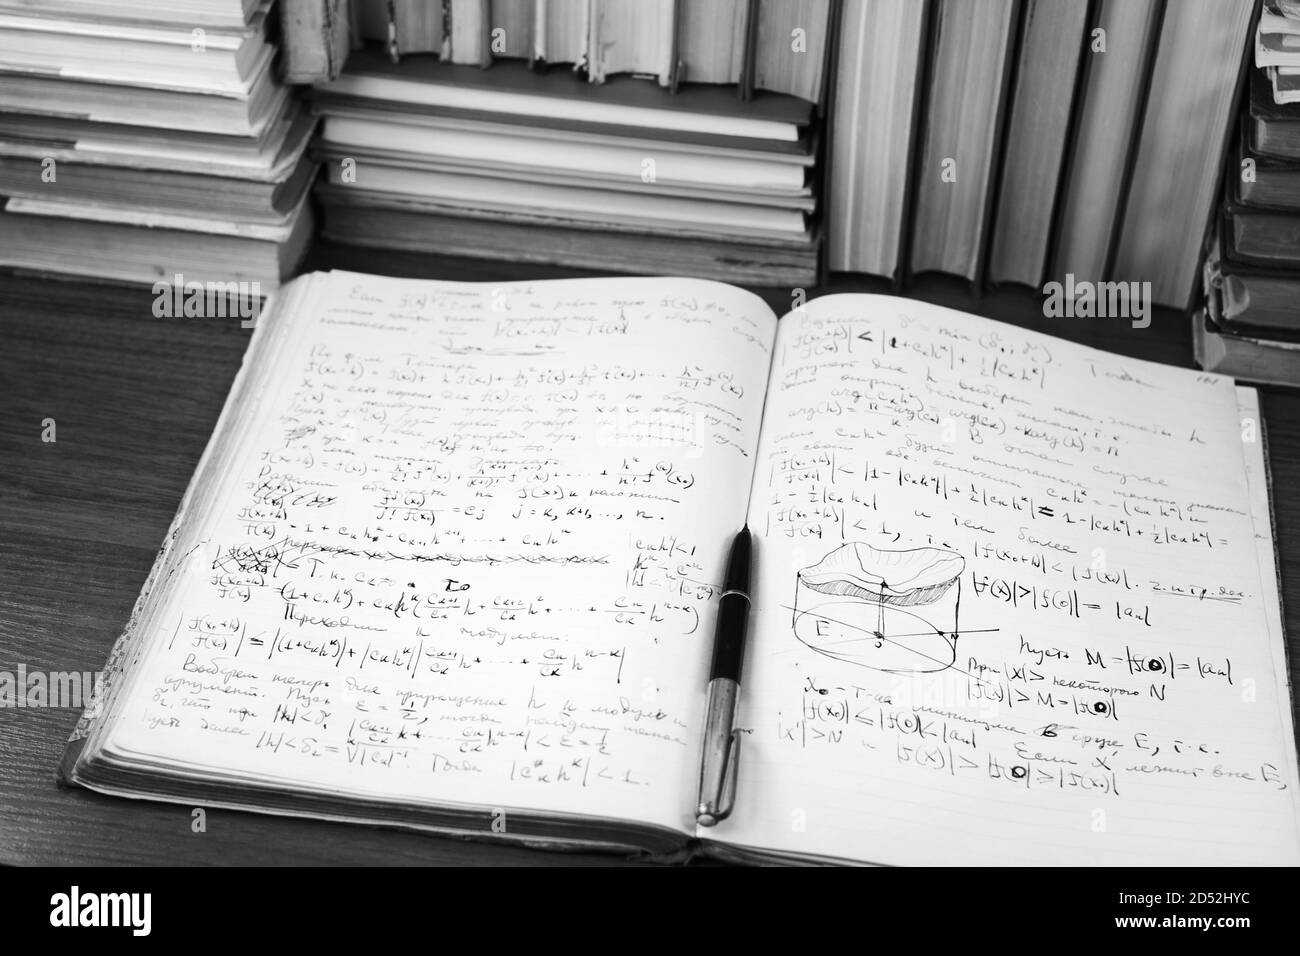 Offenes Schreibbuch mit mathematischen Vorträgen vor dem Hintergrund von Büchern Stockfoto